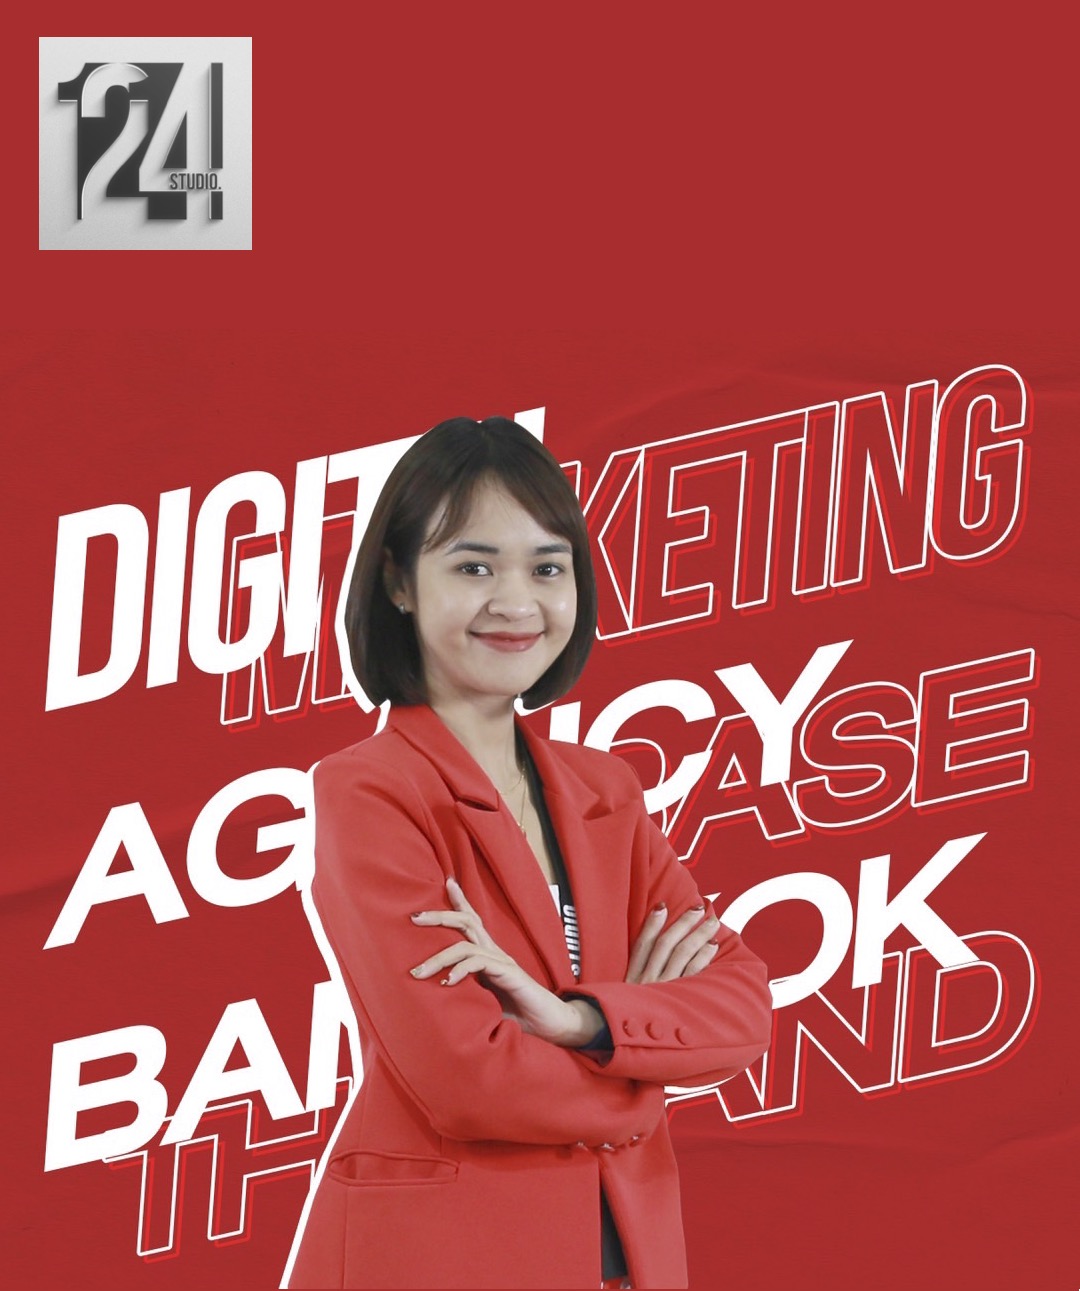 1214 STUDIO – A digital marketing agency